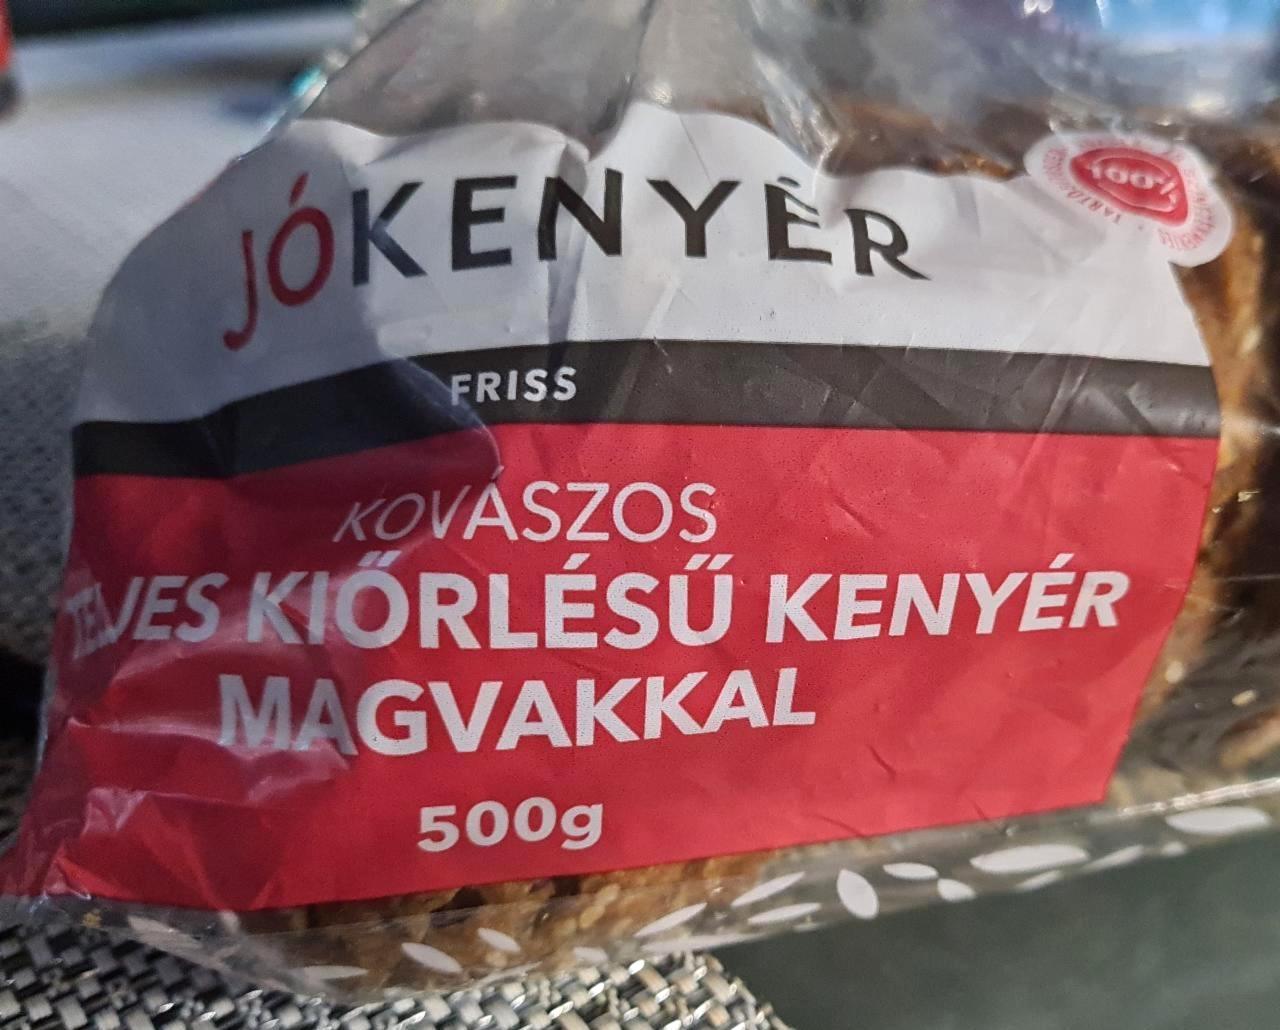 Képek - Kovászos teljes kiörlésű kenyér magvakkal Jókenyér